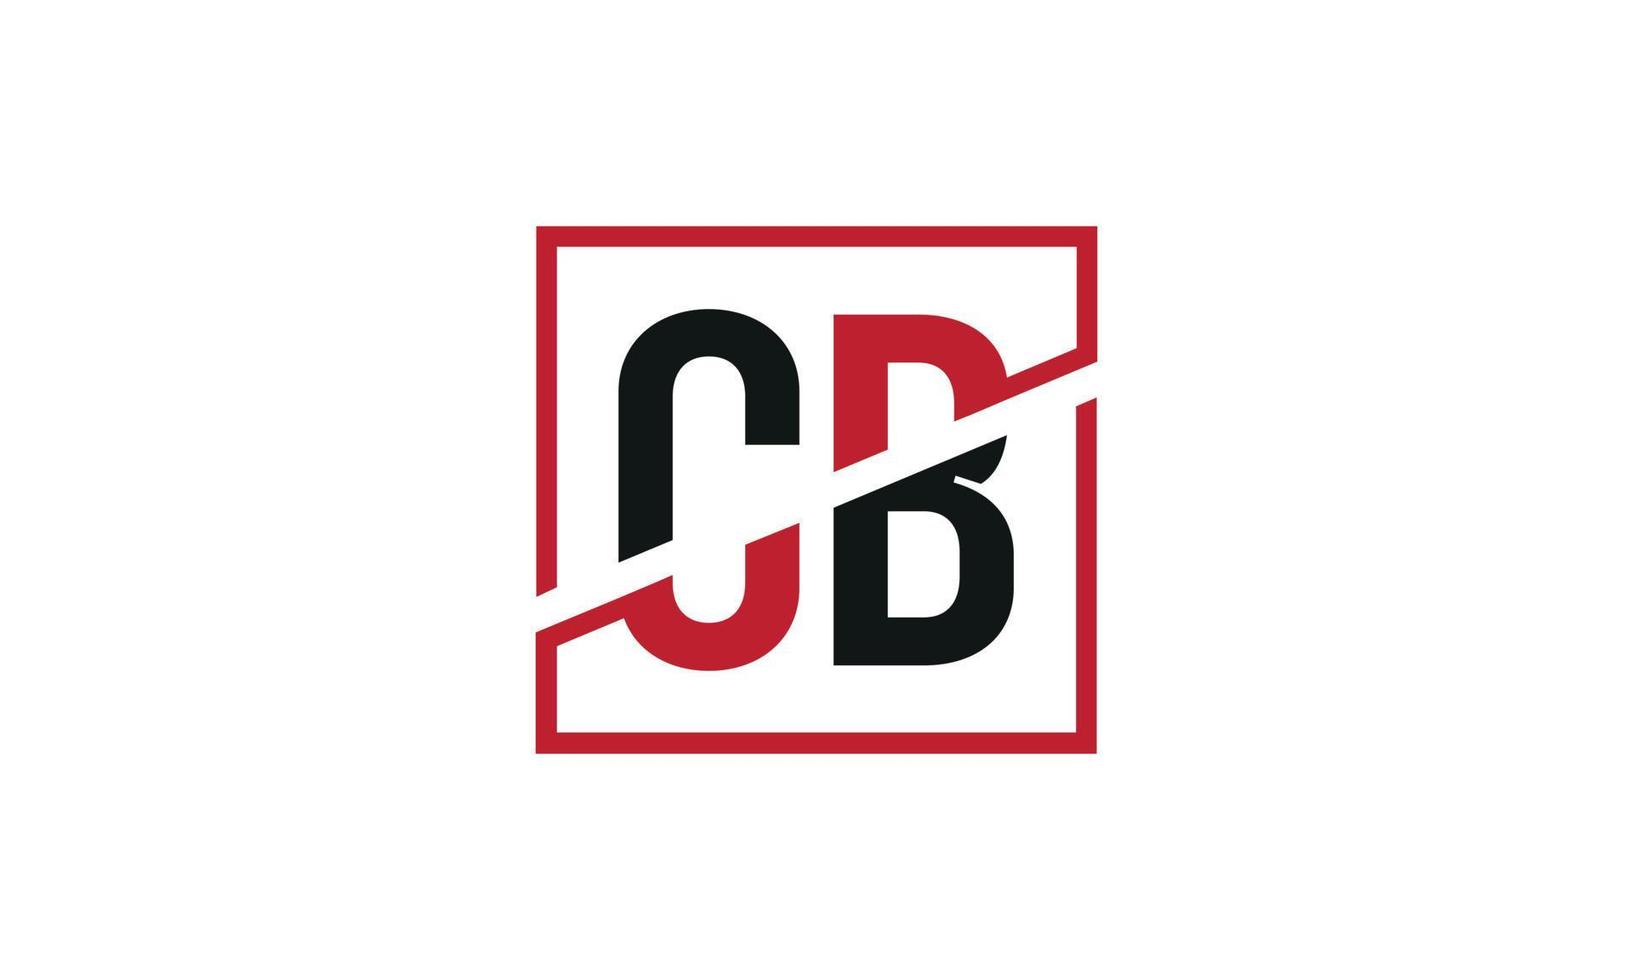 lettera cb logo professionista vettore file professionista vettore